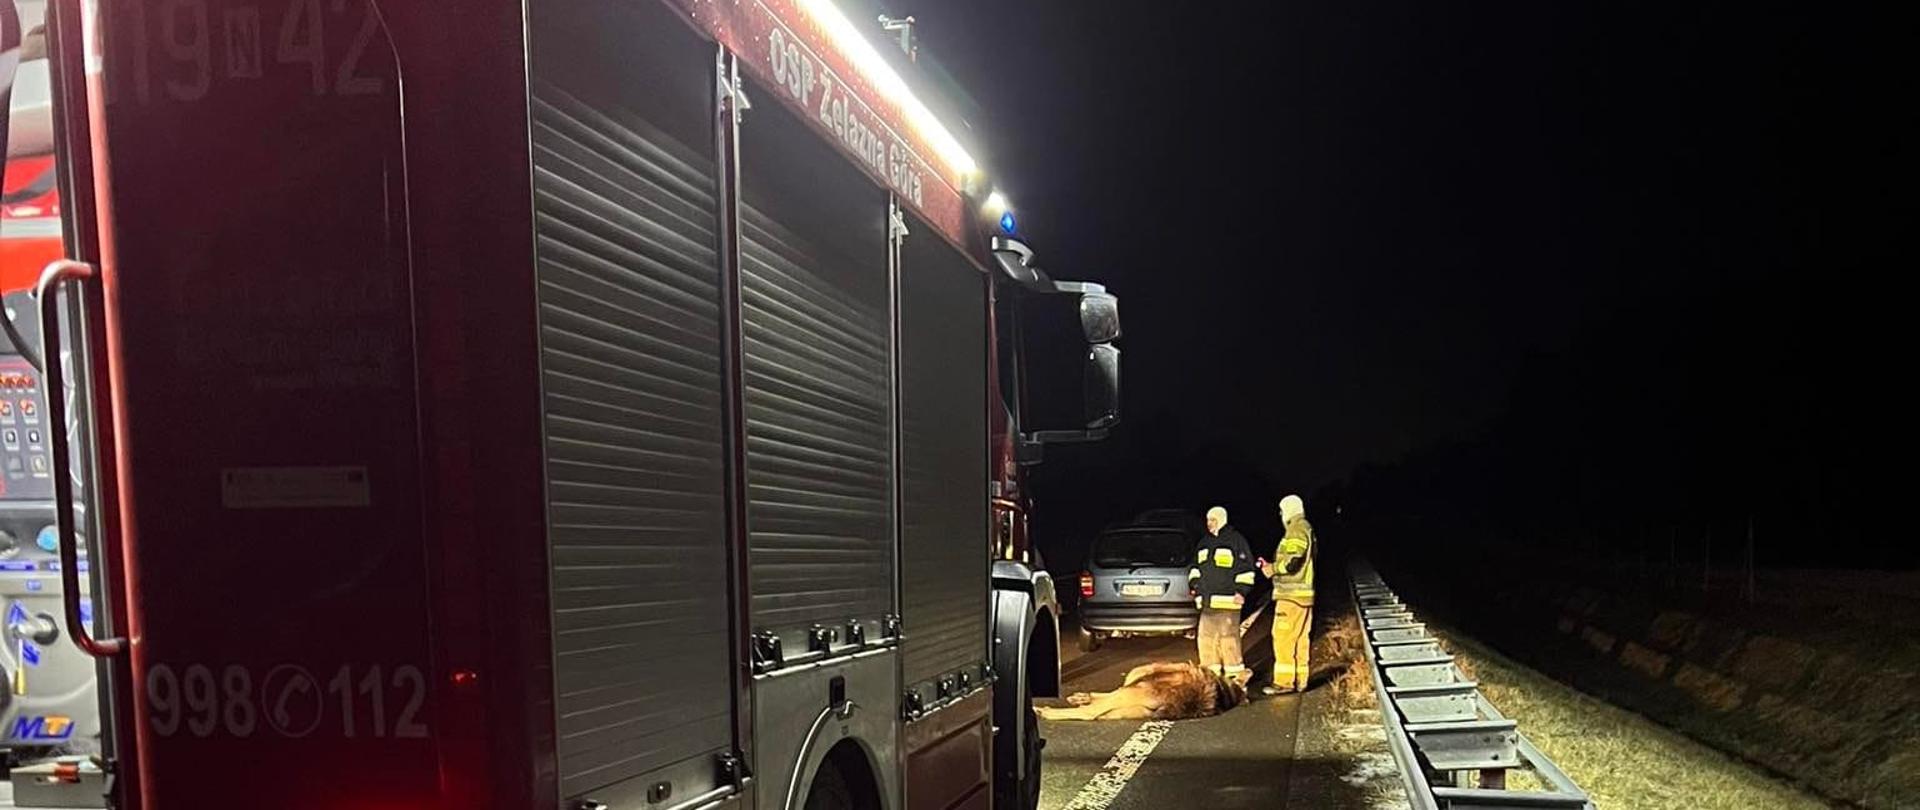 Zdjęcie zrobione nocą. Na drodze przy barierkach drogowych stoi czerwony samochód strażacki. W oddali oświetlani przez światła samochodu stoi dwóch strażaków.